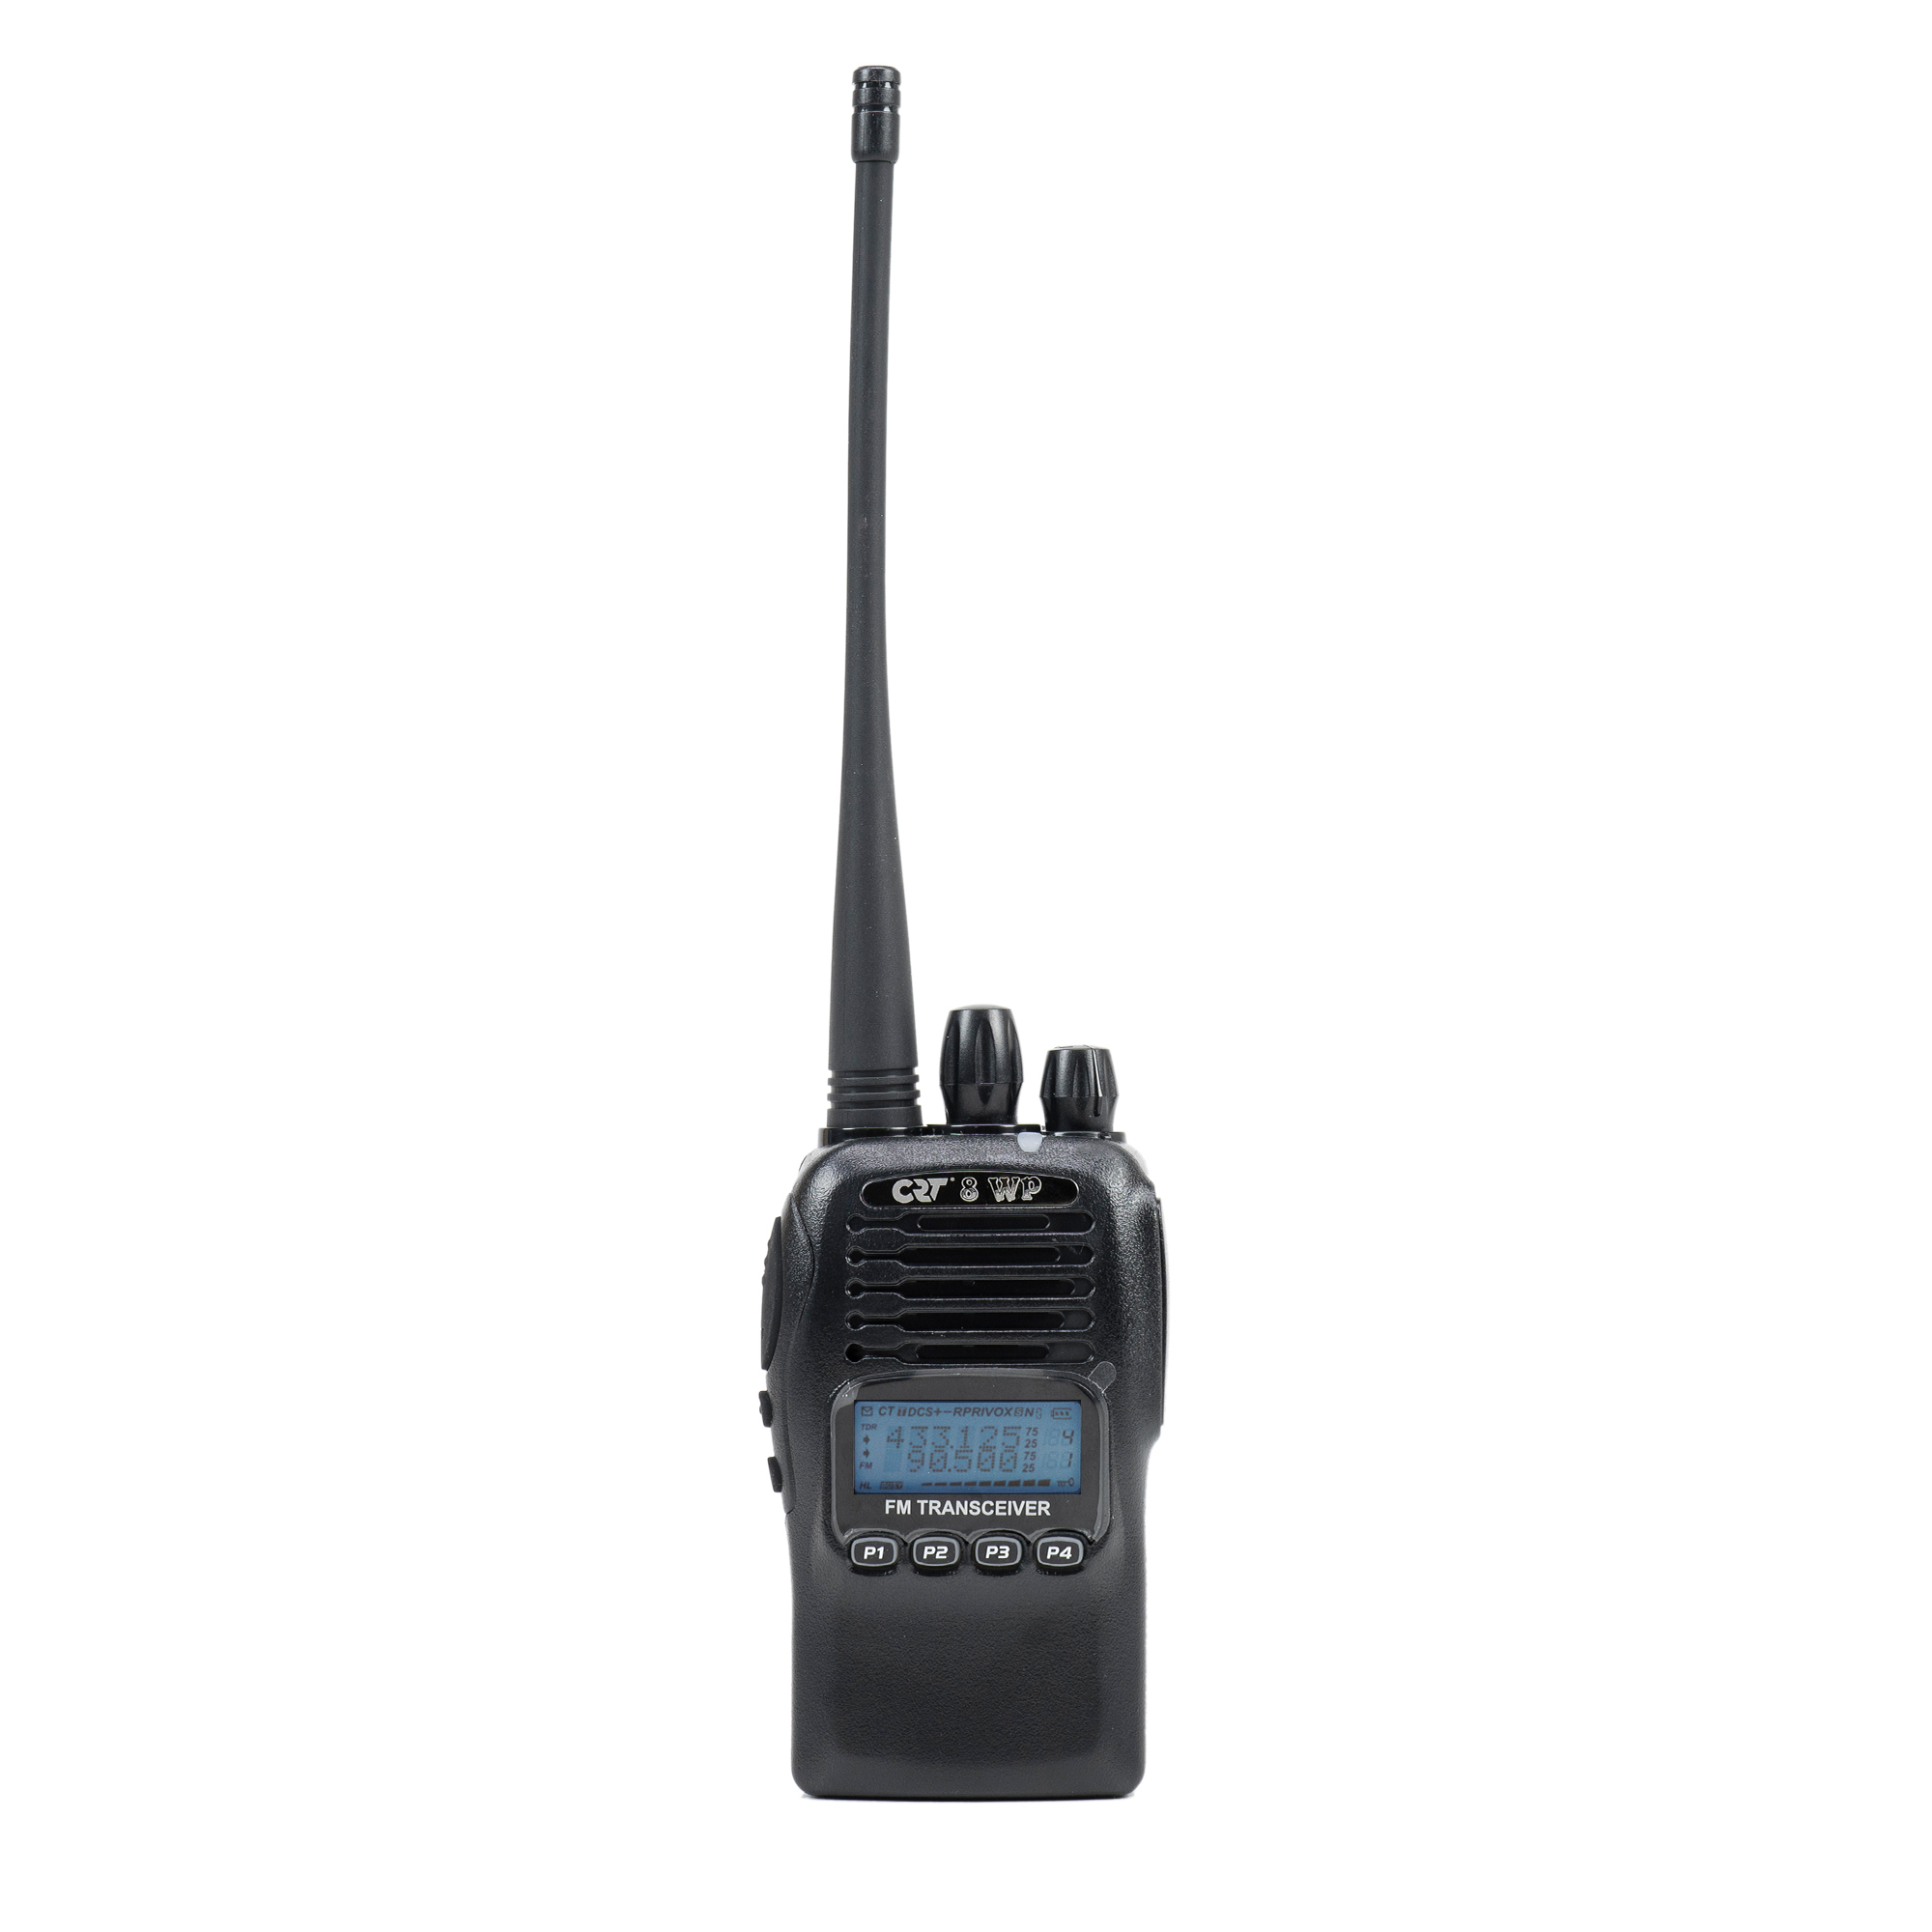 Statie radio PMR portabila CRT 8WP PMR UHF, waterproof IP67, Scan, Squelch, Vox, Radio FM